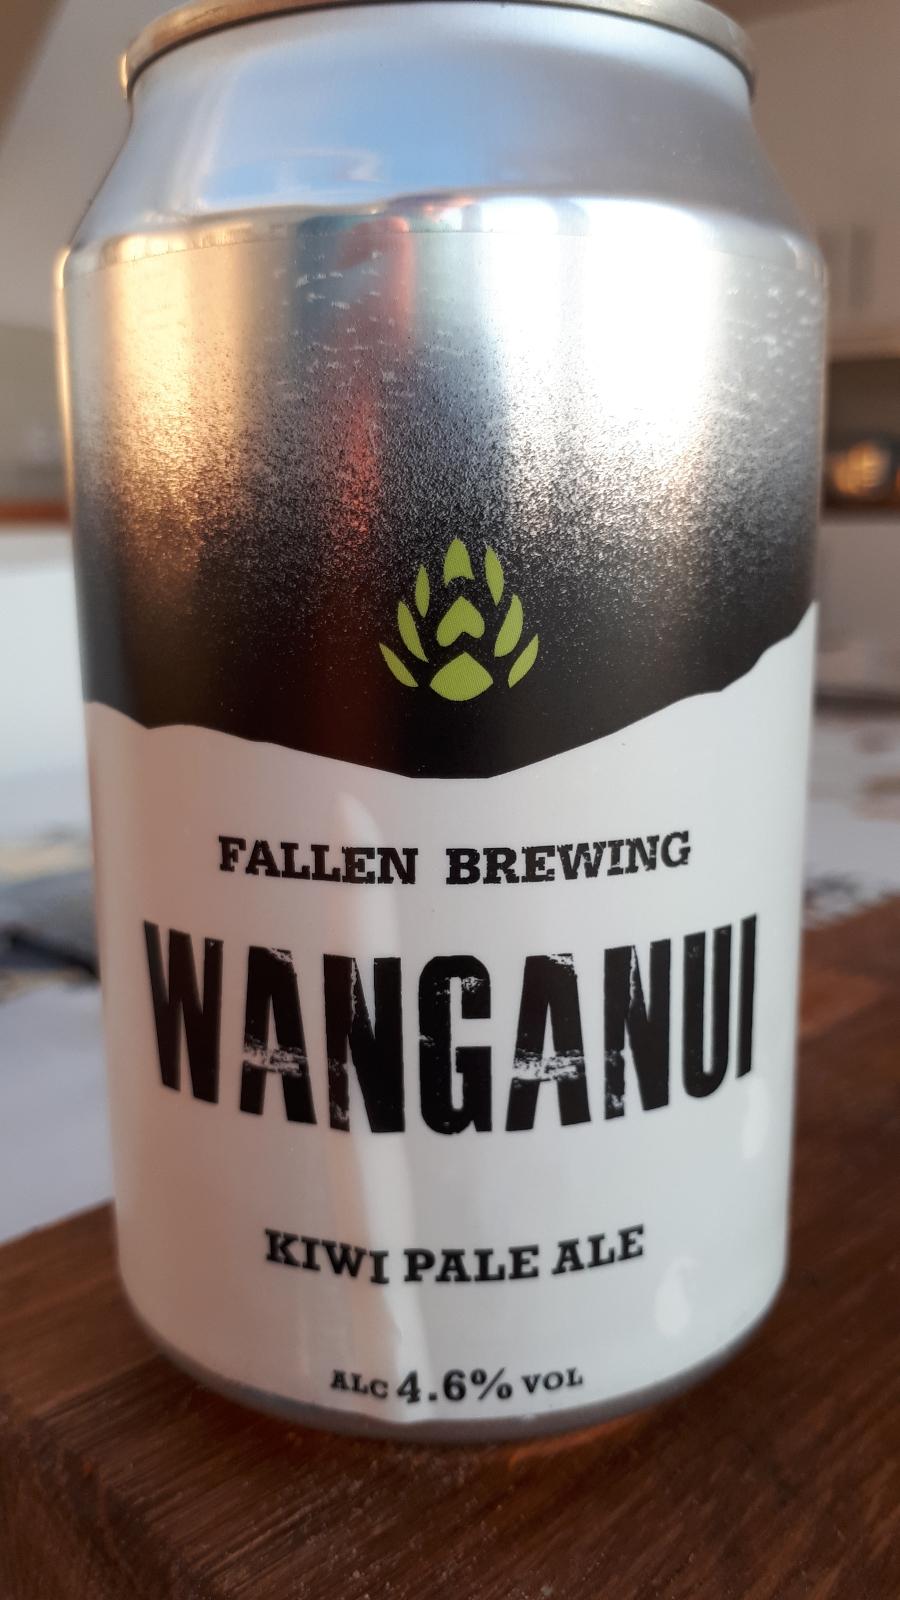 Wanganui